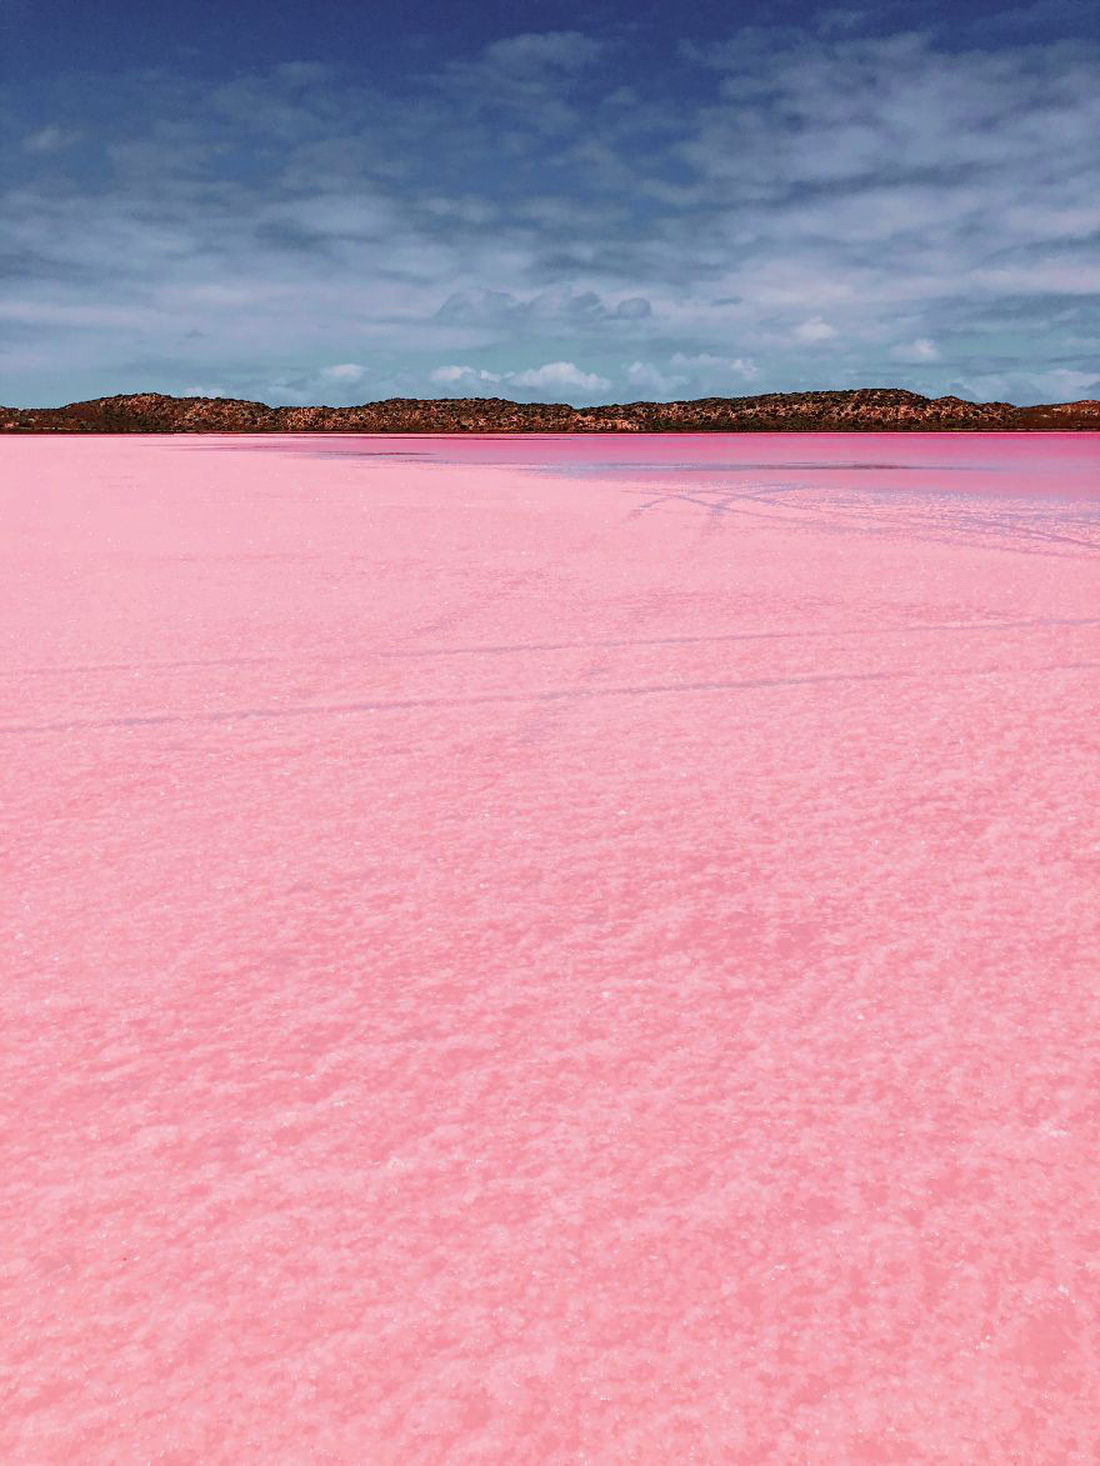 Kỳ lạ hồ nước màu hồng, đỏ, cam theo giờ - Ảnh 12.